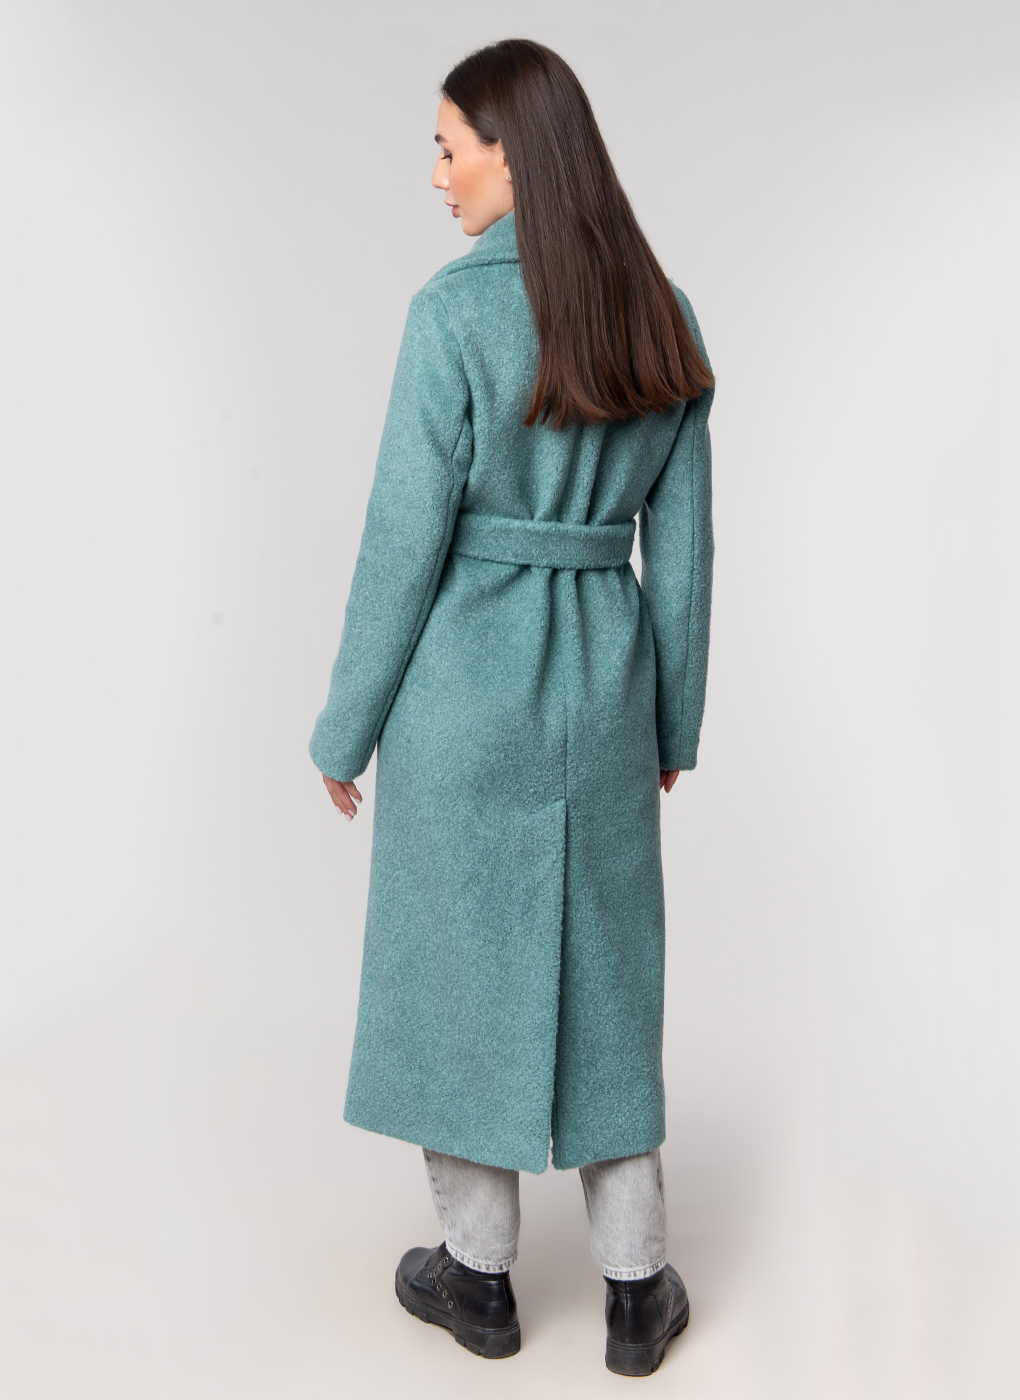 Пальто женское Каляев 59121 зеленое 46 RU